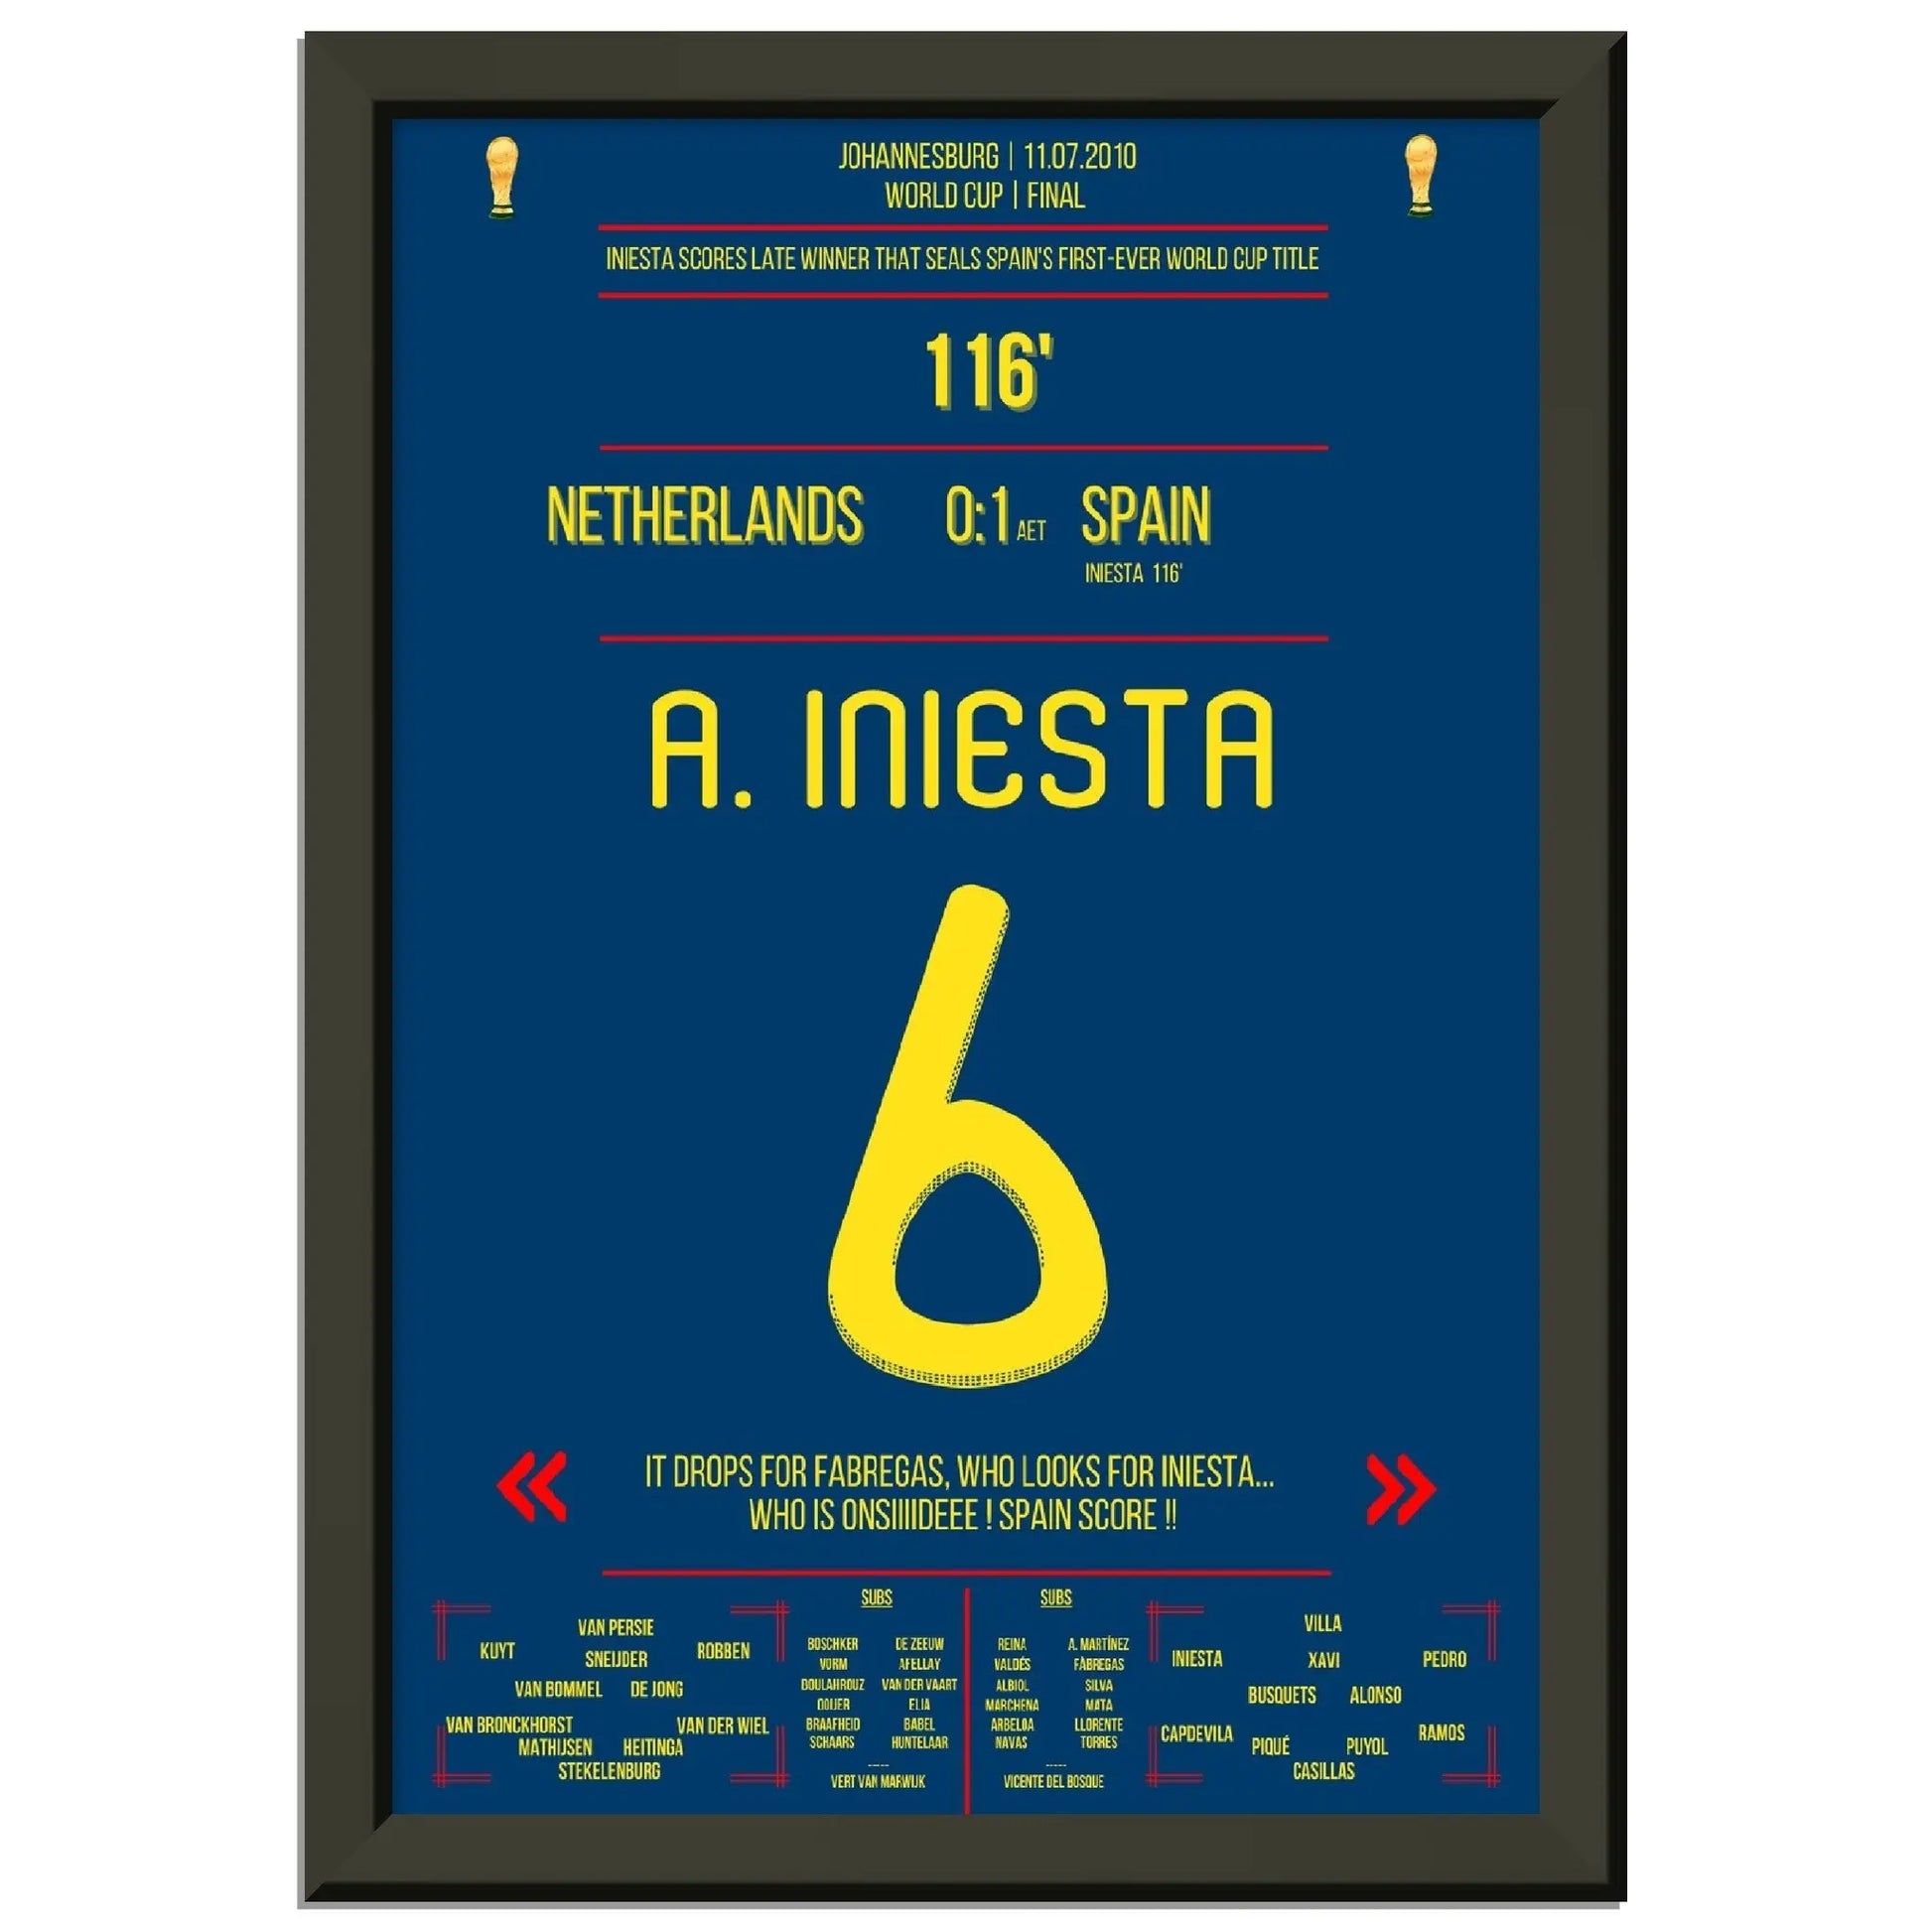 Iniesta's Tor zur Unsterblichkeit im WM Finale 2010 gegen Holland 